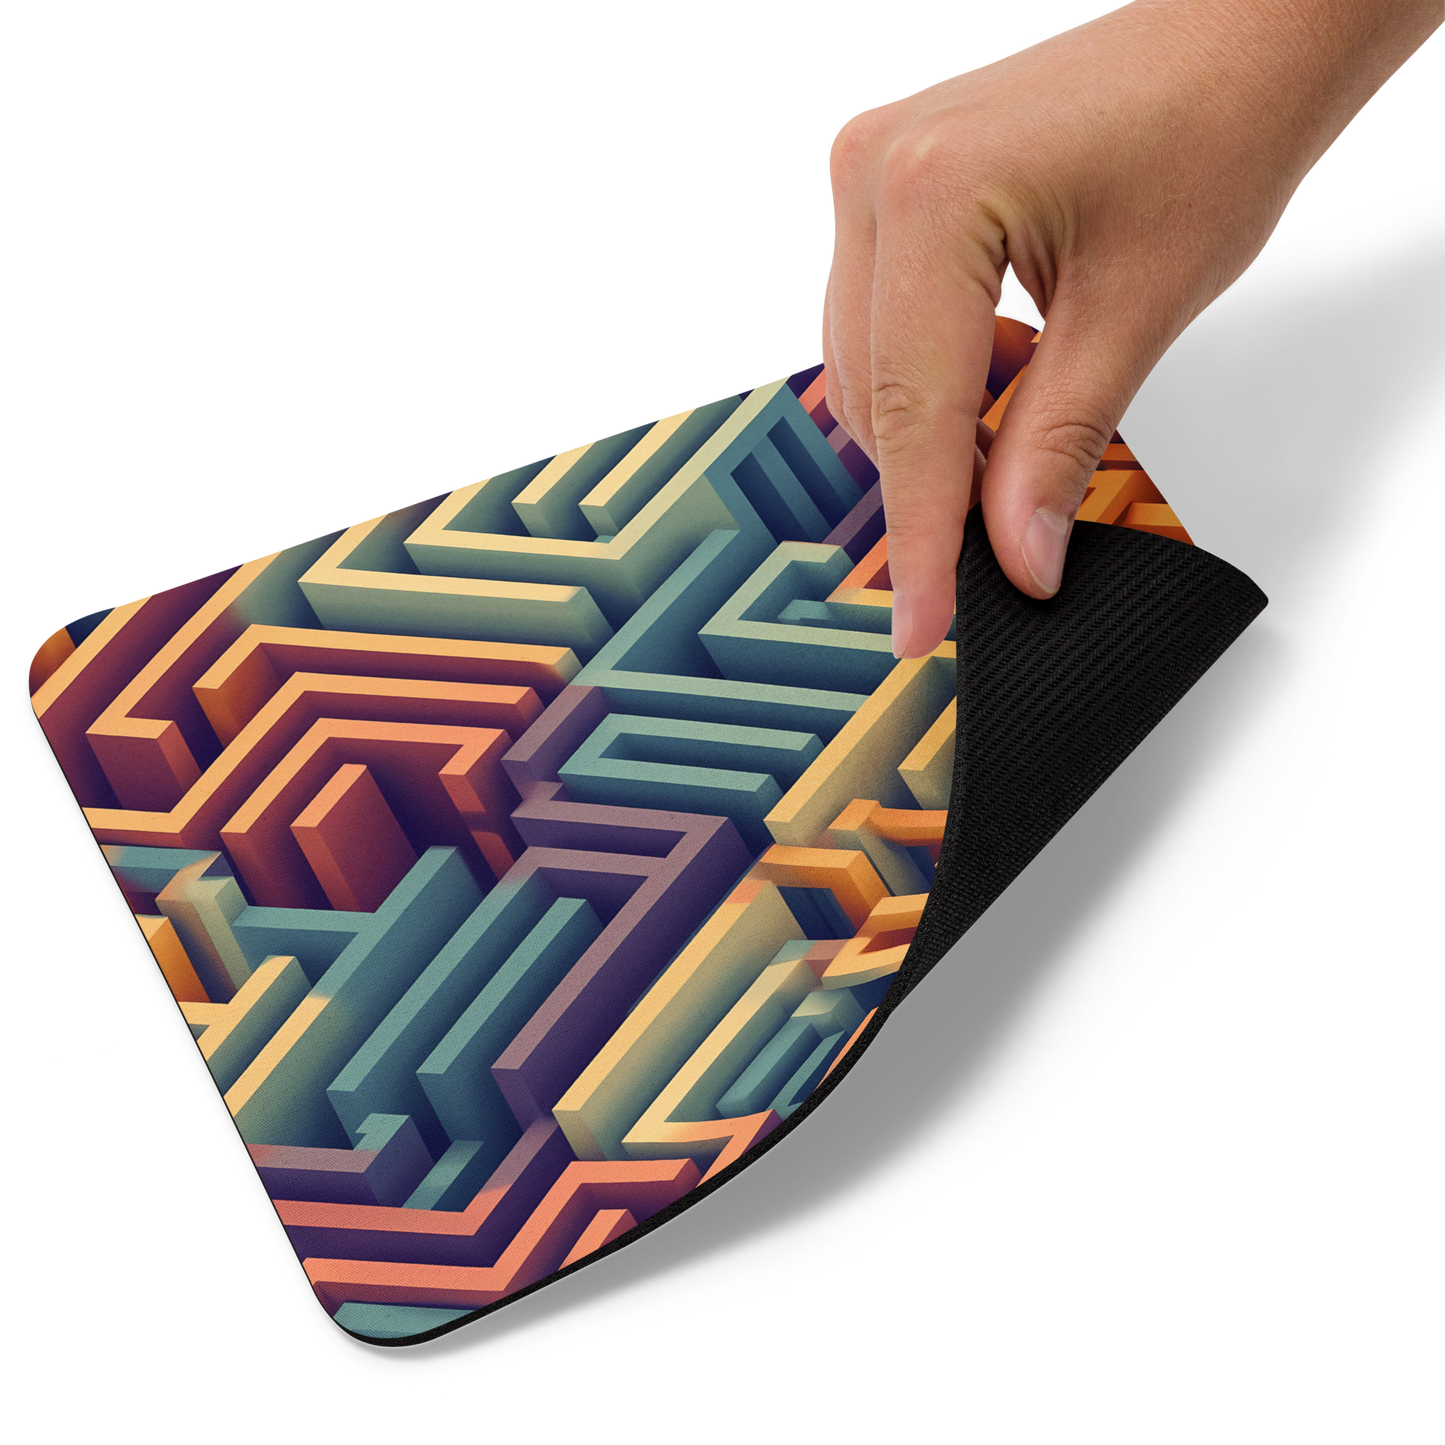 3D Maze Illusion | 3D Patterns | Mouse Pad - #3